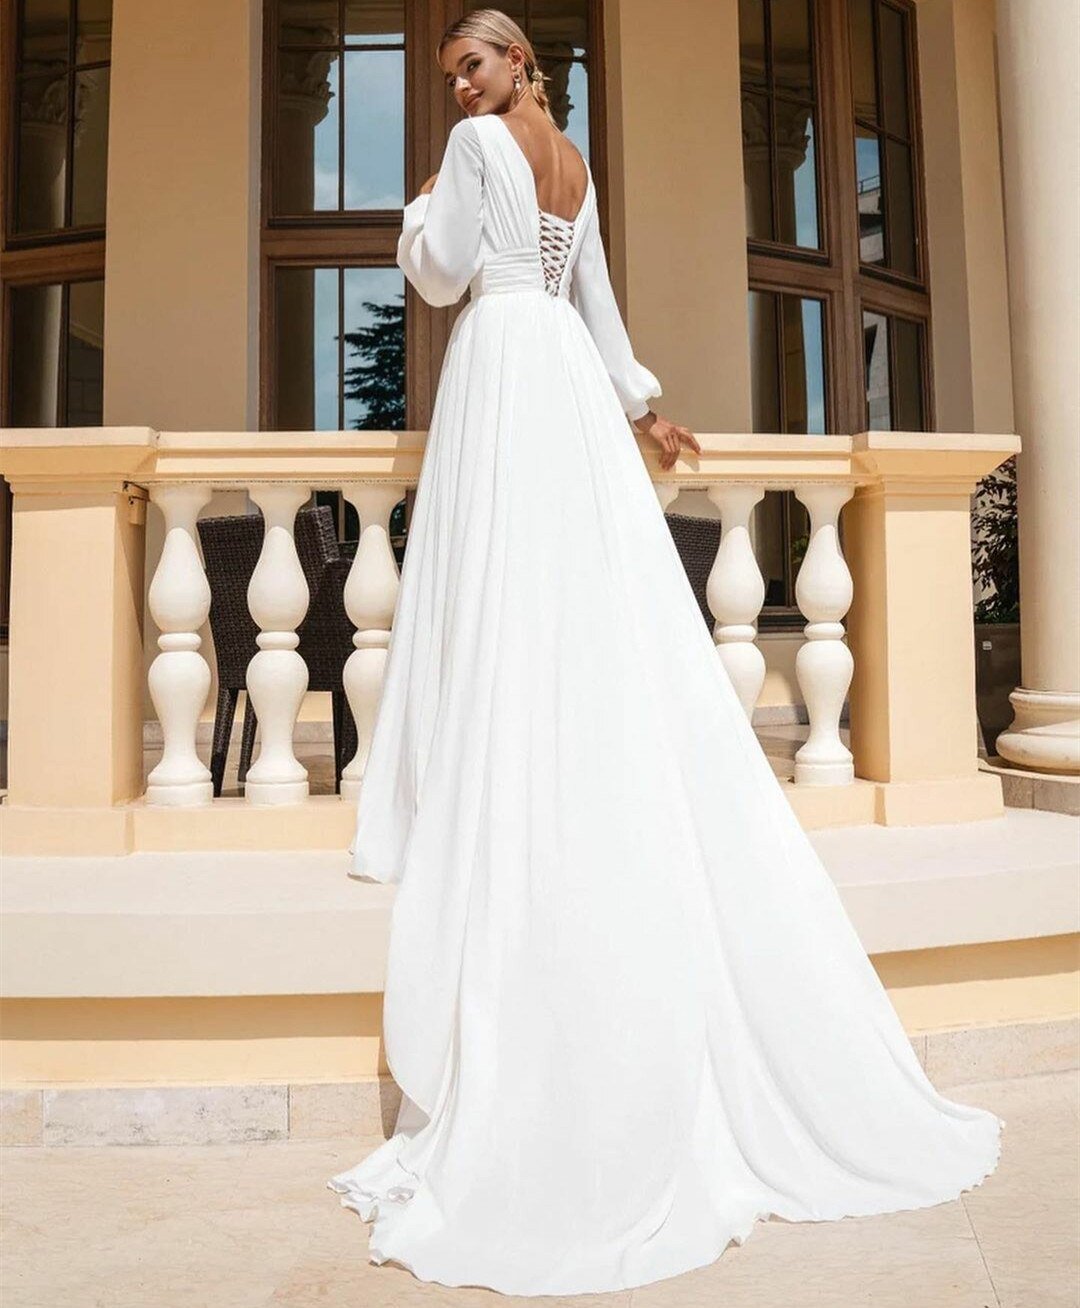 Греческое свадебное платье с рукавами